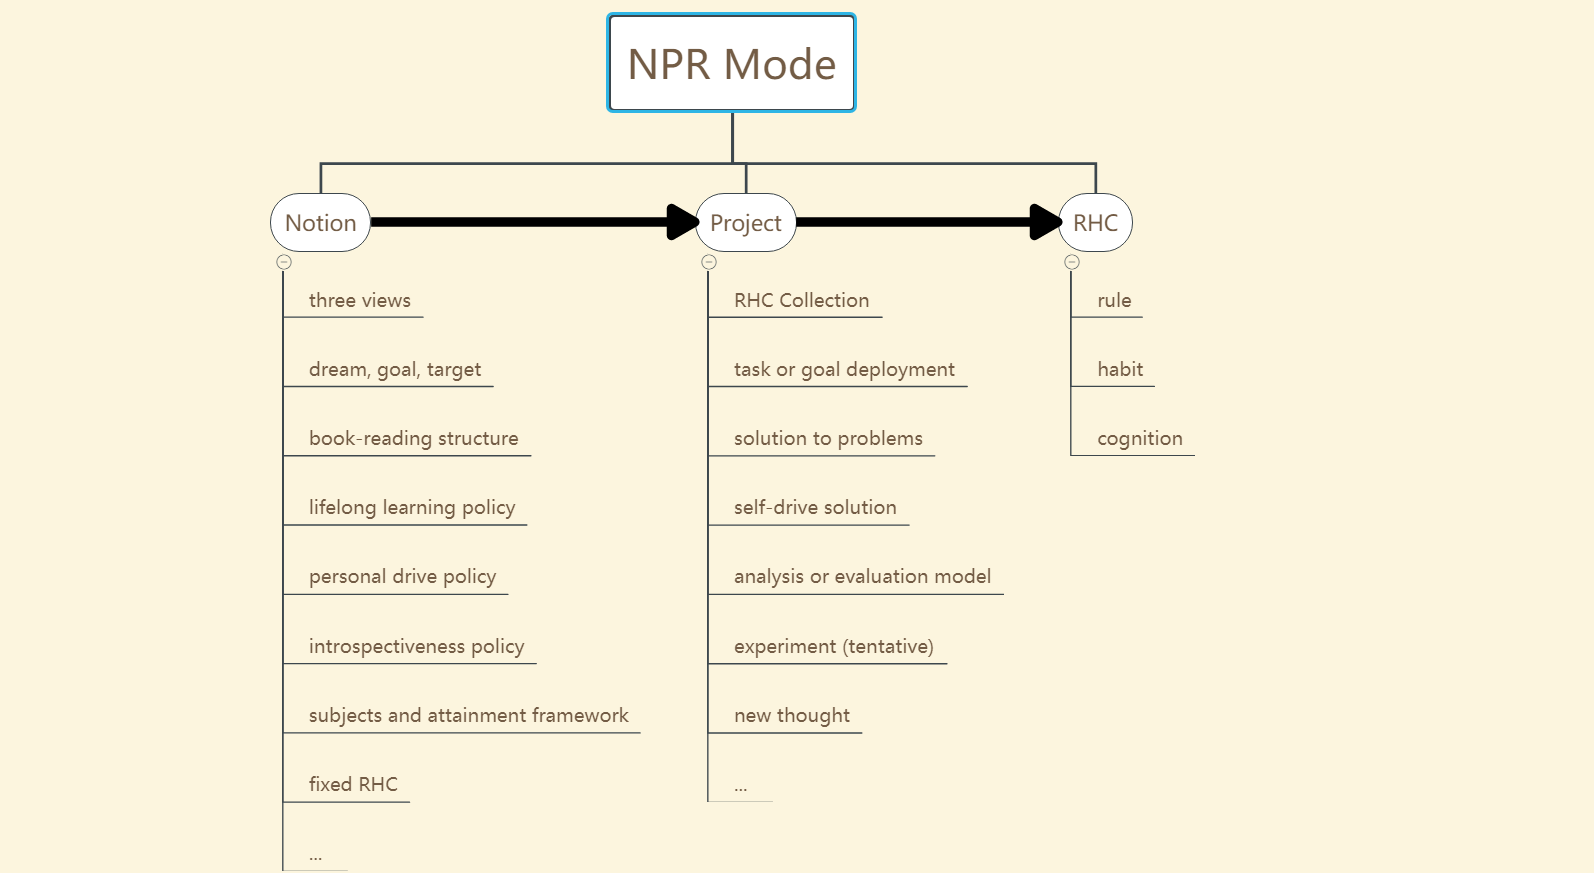 NPR Mode in details